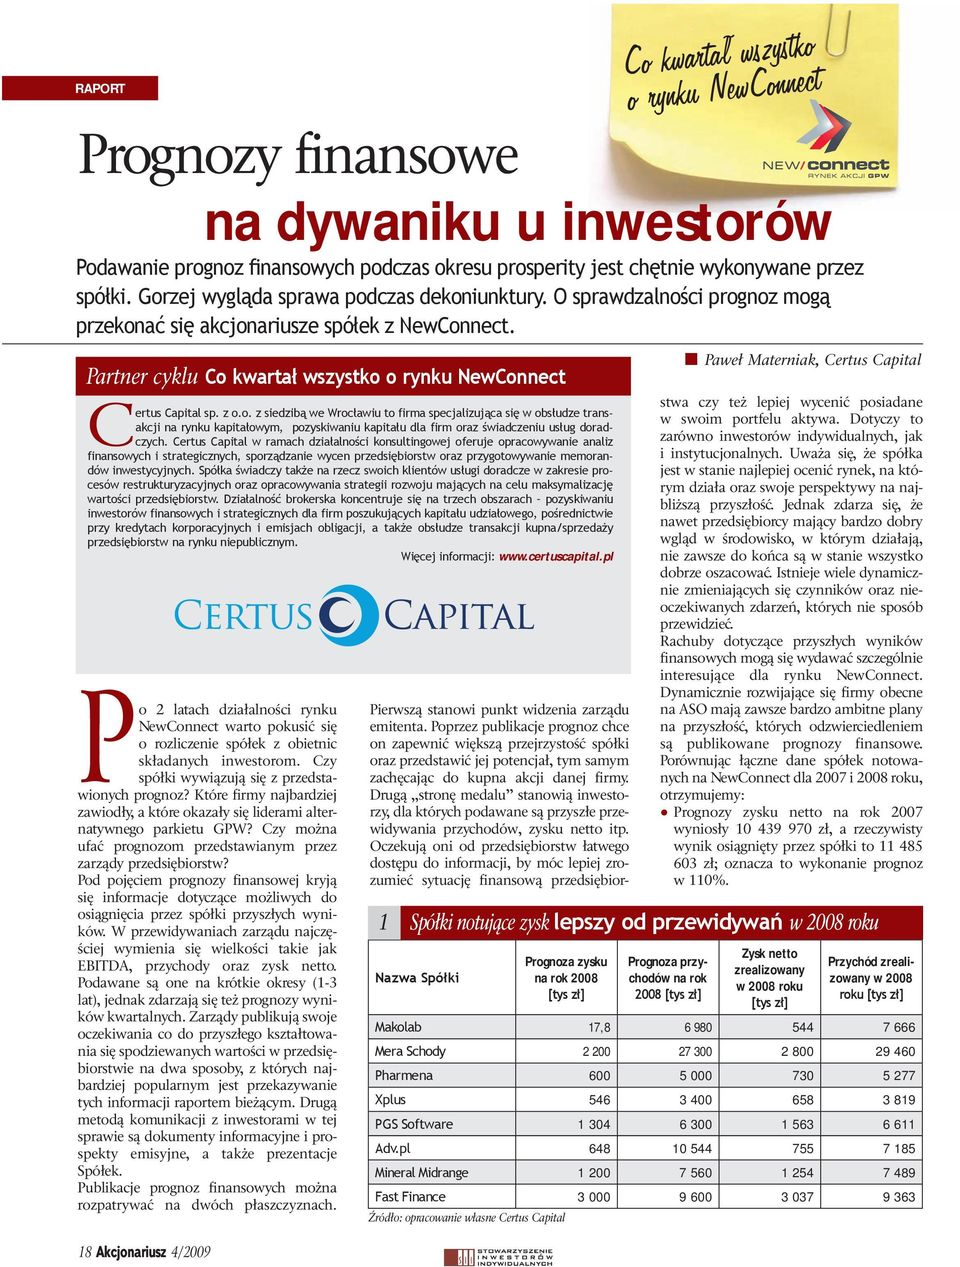 Certus Capital w ramach działalności konsultingowej oferuje opracowywanie analiz finansowych i strategicznych, sporządzanie wycen przedsiębiorstw oraz przygotowywanie memorandów inwestycyjnych.